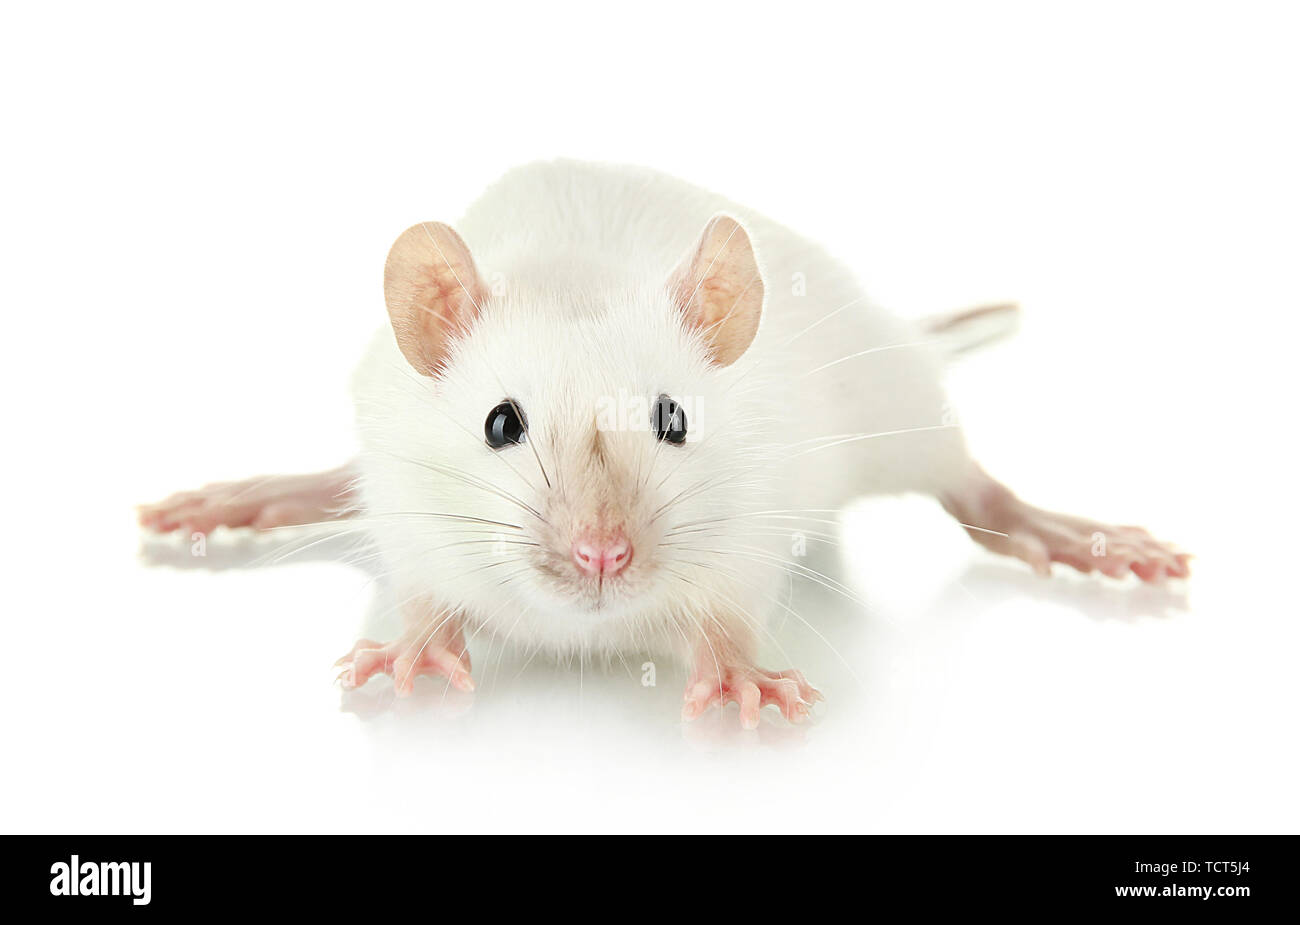 Картинки с крысами с надписями. Мышь на белом фоне. Белая мышь. Белая мышь на белом фоне. Белая крыса.